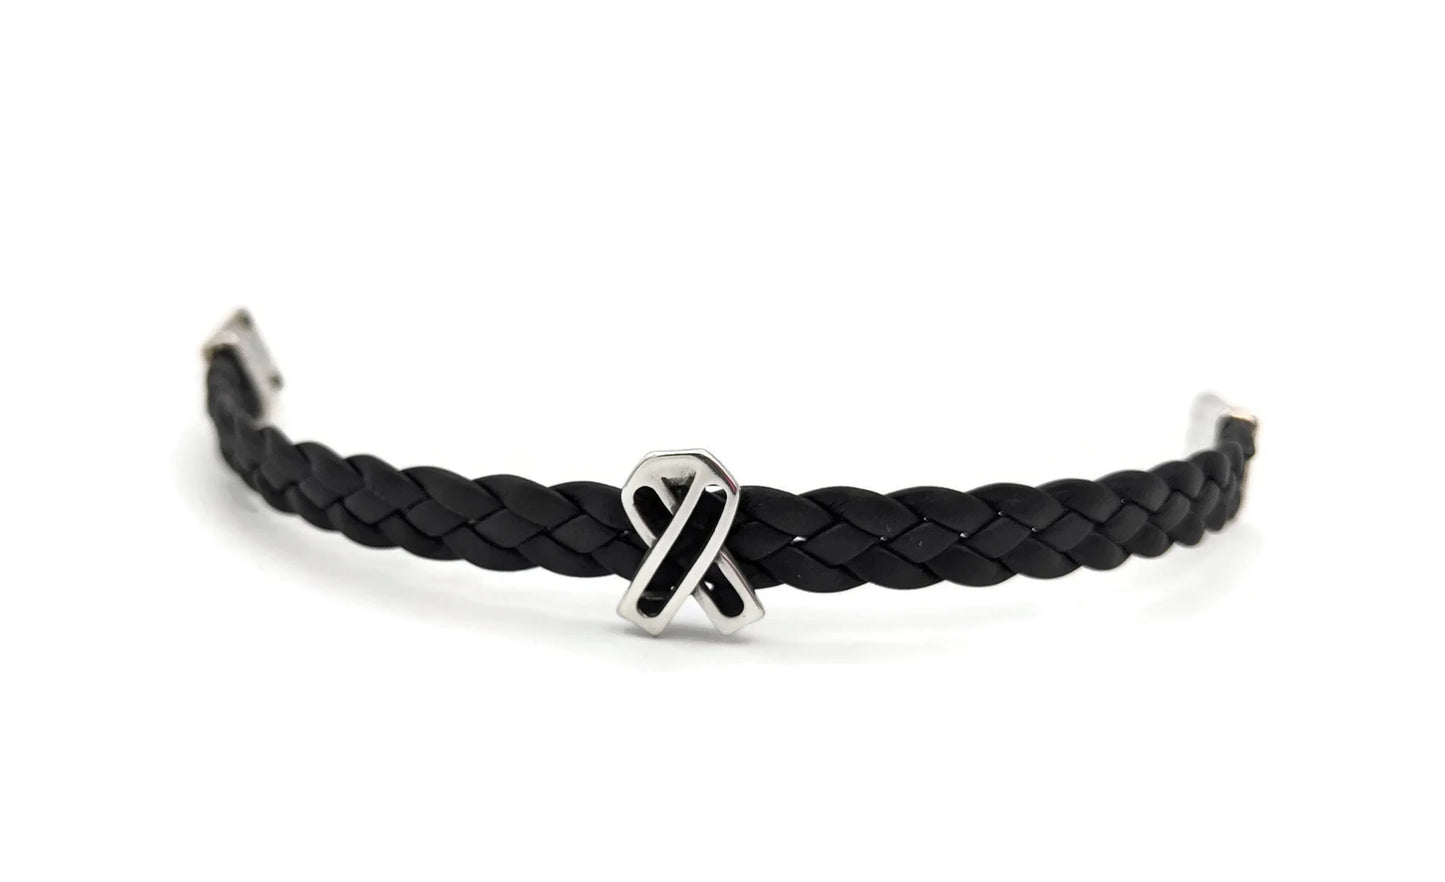 Melanoma Black Leather Braided Bracelet